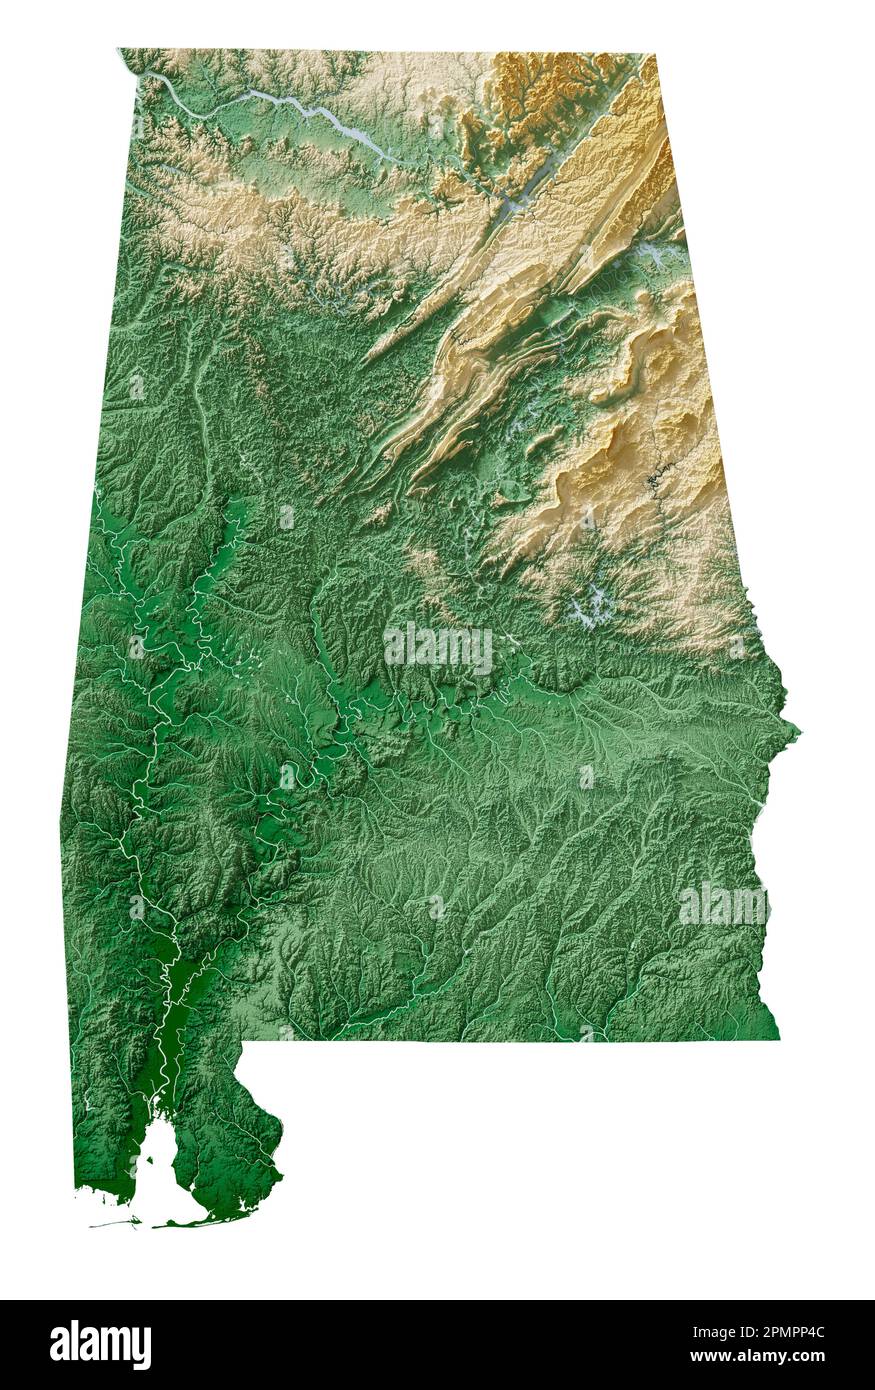 L'État américain de l'Alabama. Rendu 3D très détaillé de la carte de relief ombré avec les rivières et les lacs. Coloré par élévation. Créé avec des données satellite. Banque D'Images